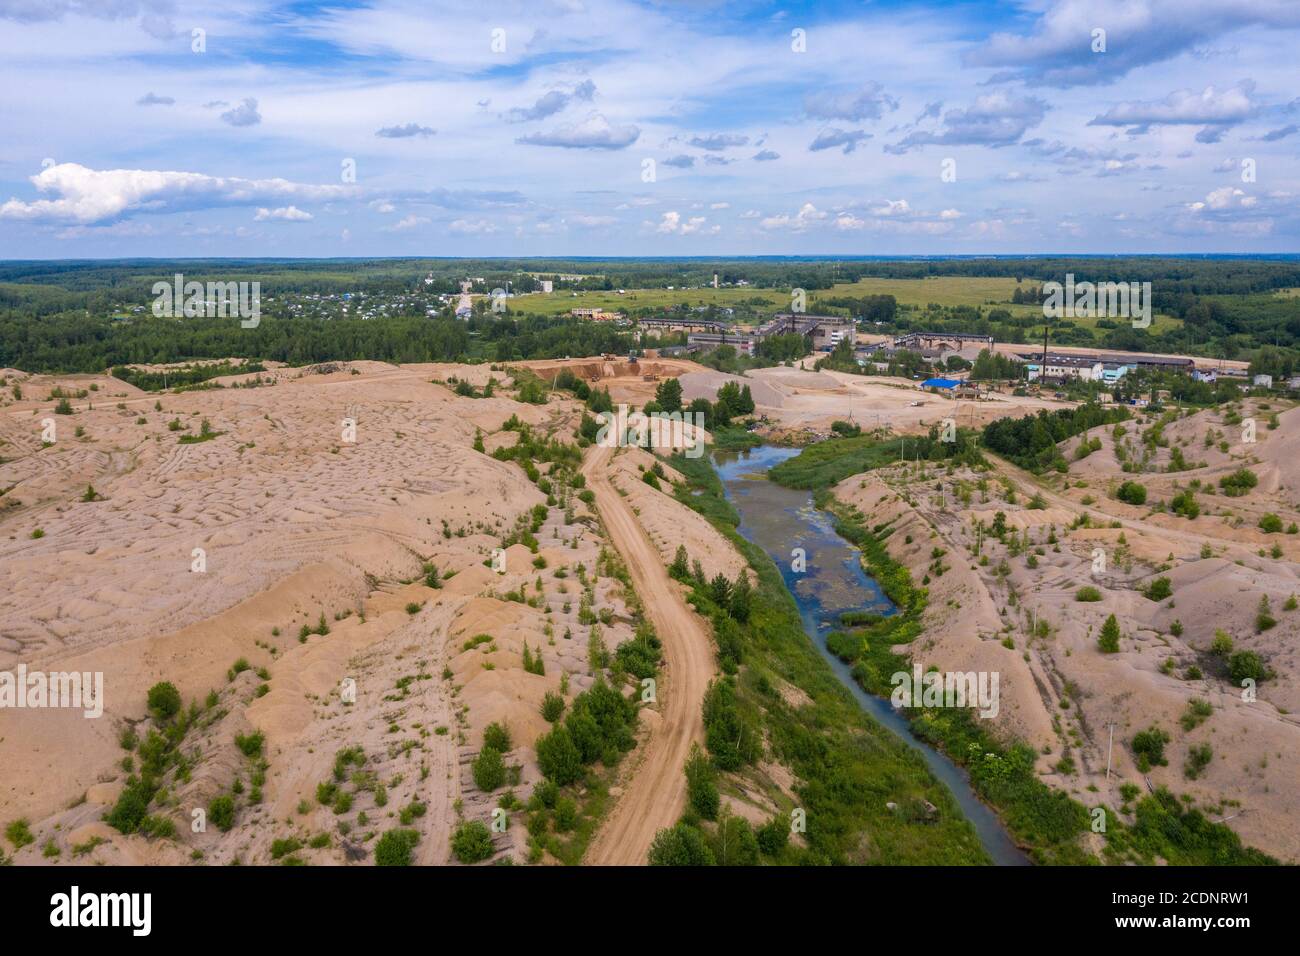 Sandsteinbruch in der Nähe des Dorfes Khromtsovo, Region Ivanovo, an einem sonnigen Sommertag, Foto von einer Drohne aufgenommen. Stockfoto